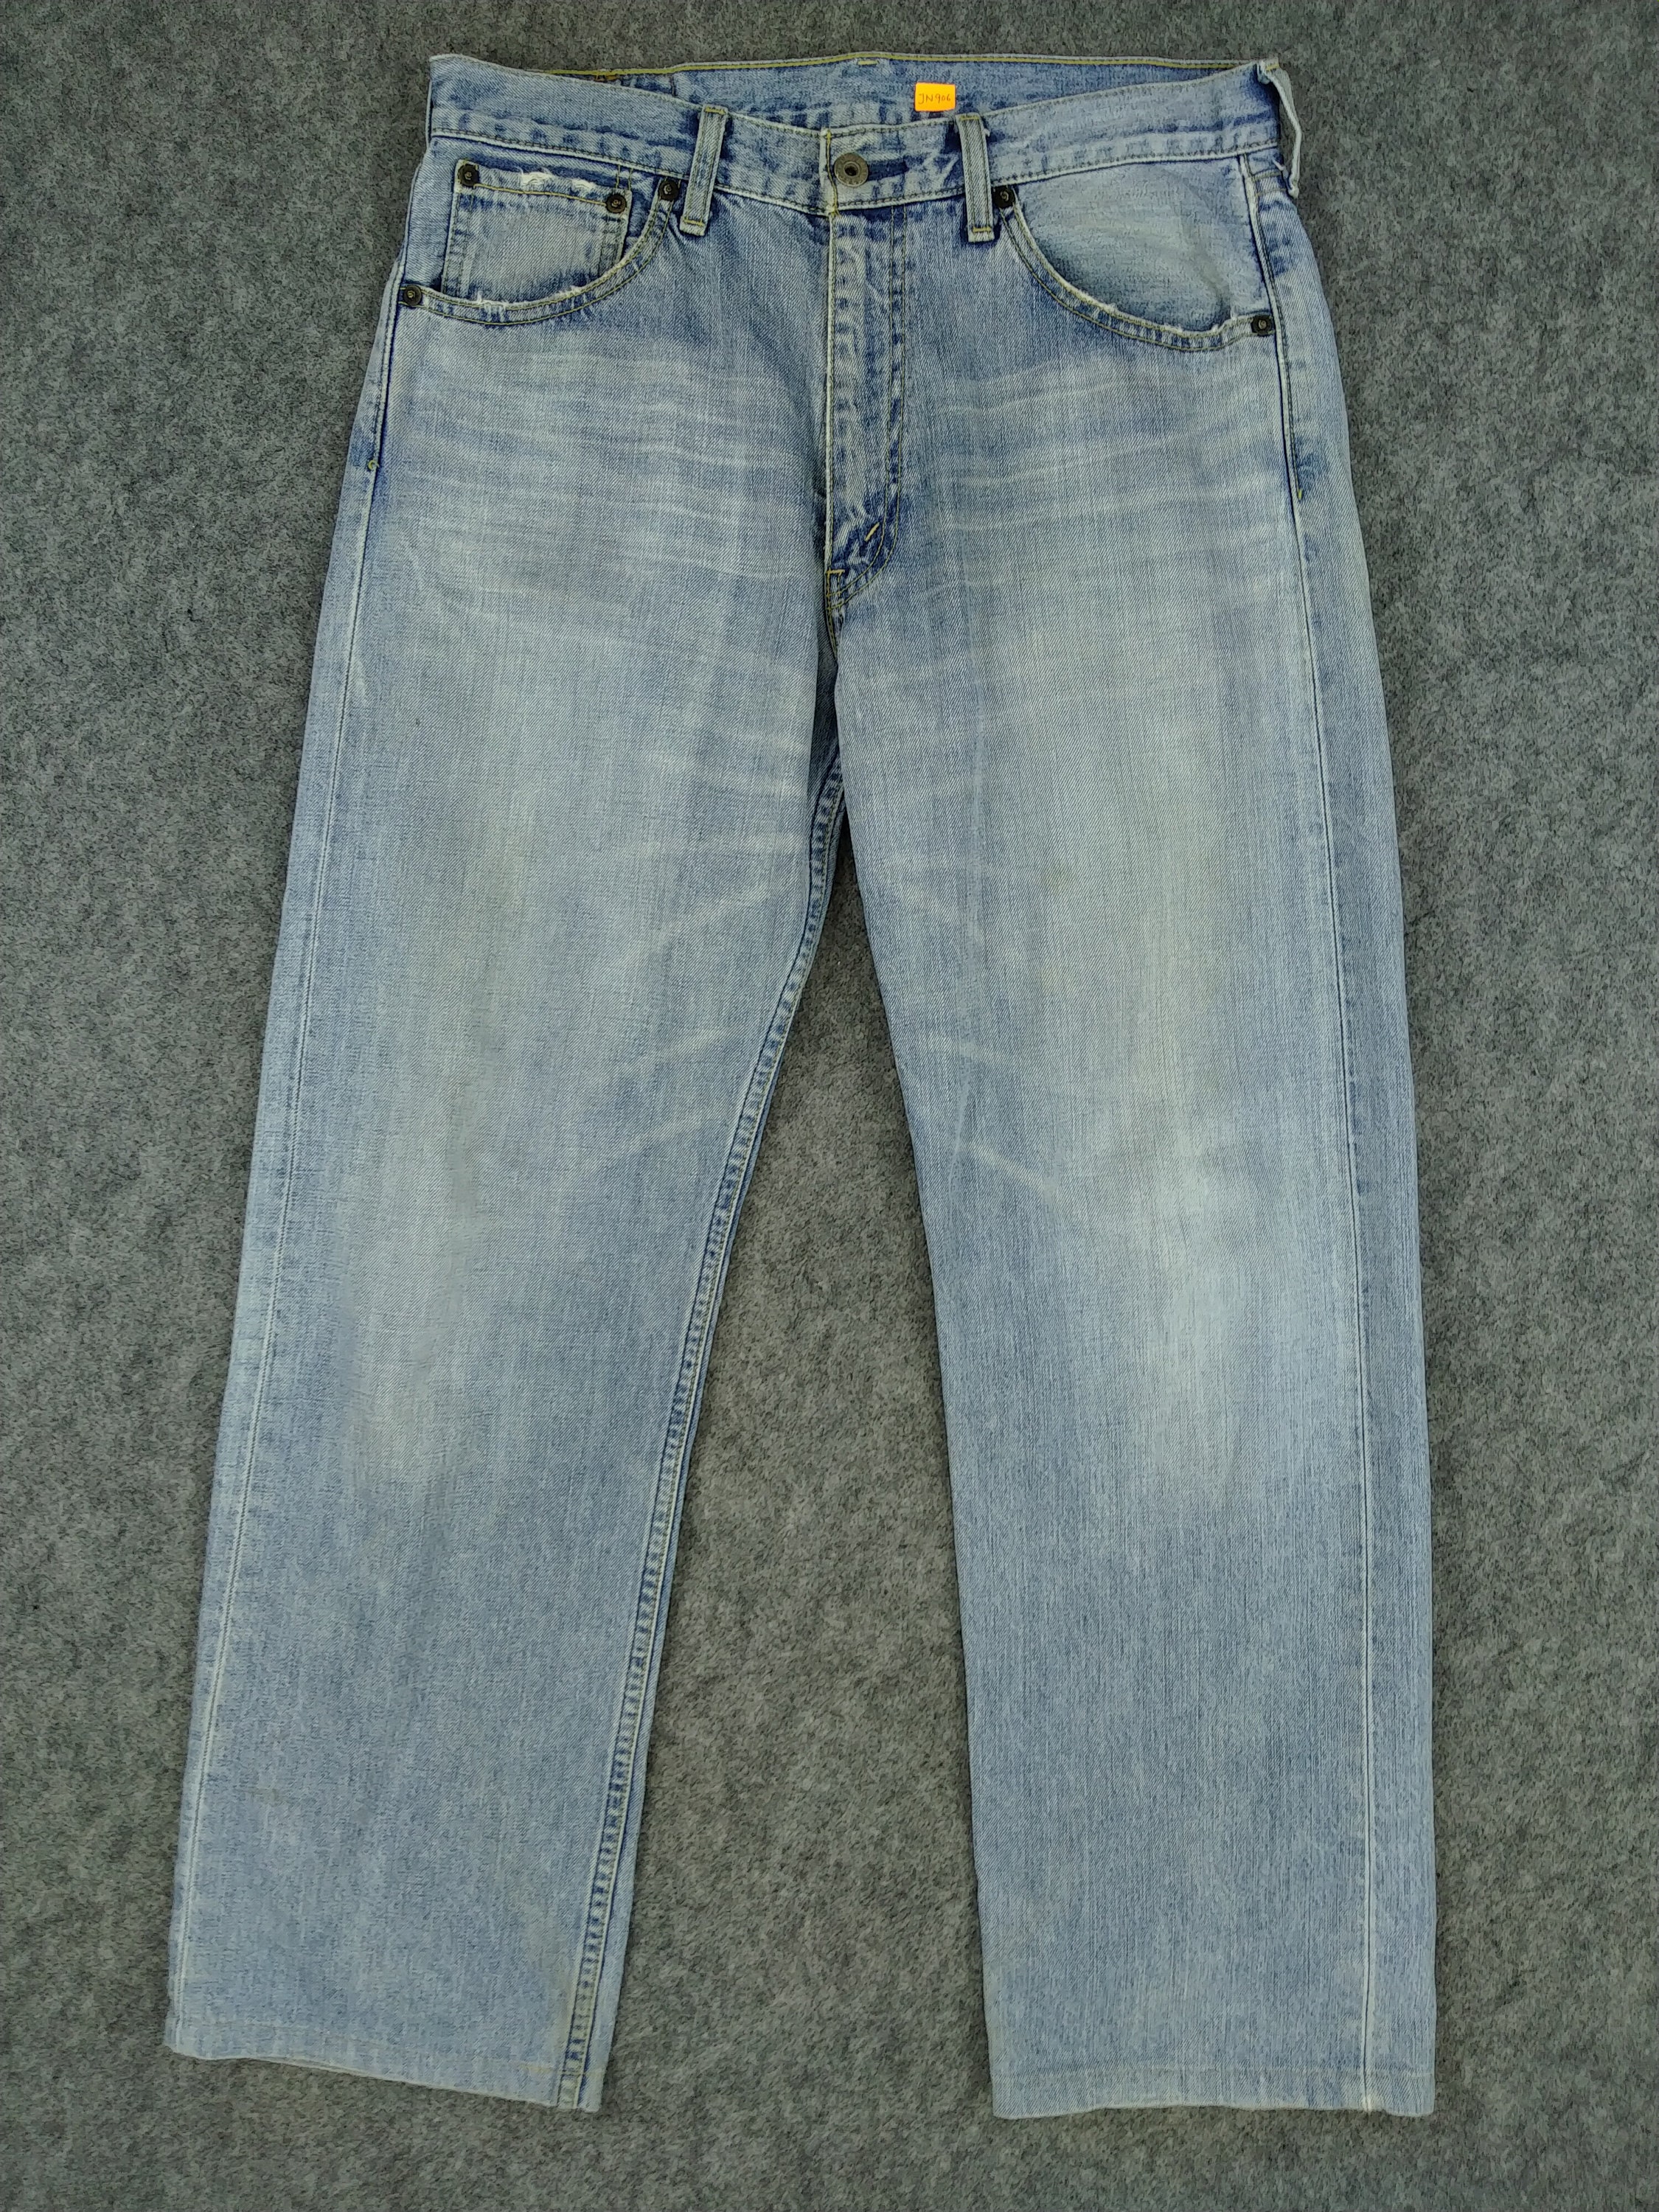 Vintage Levi's 503 Jeans 32x29 Light Blue Wash Denim Red | Etsy